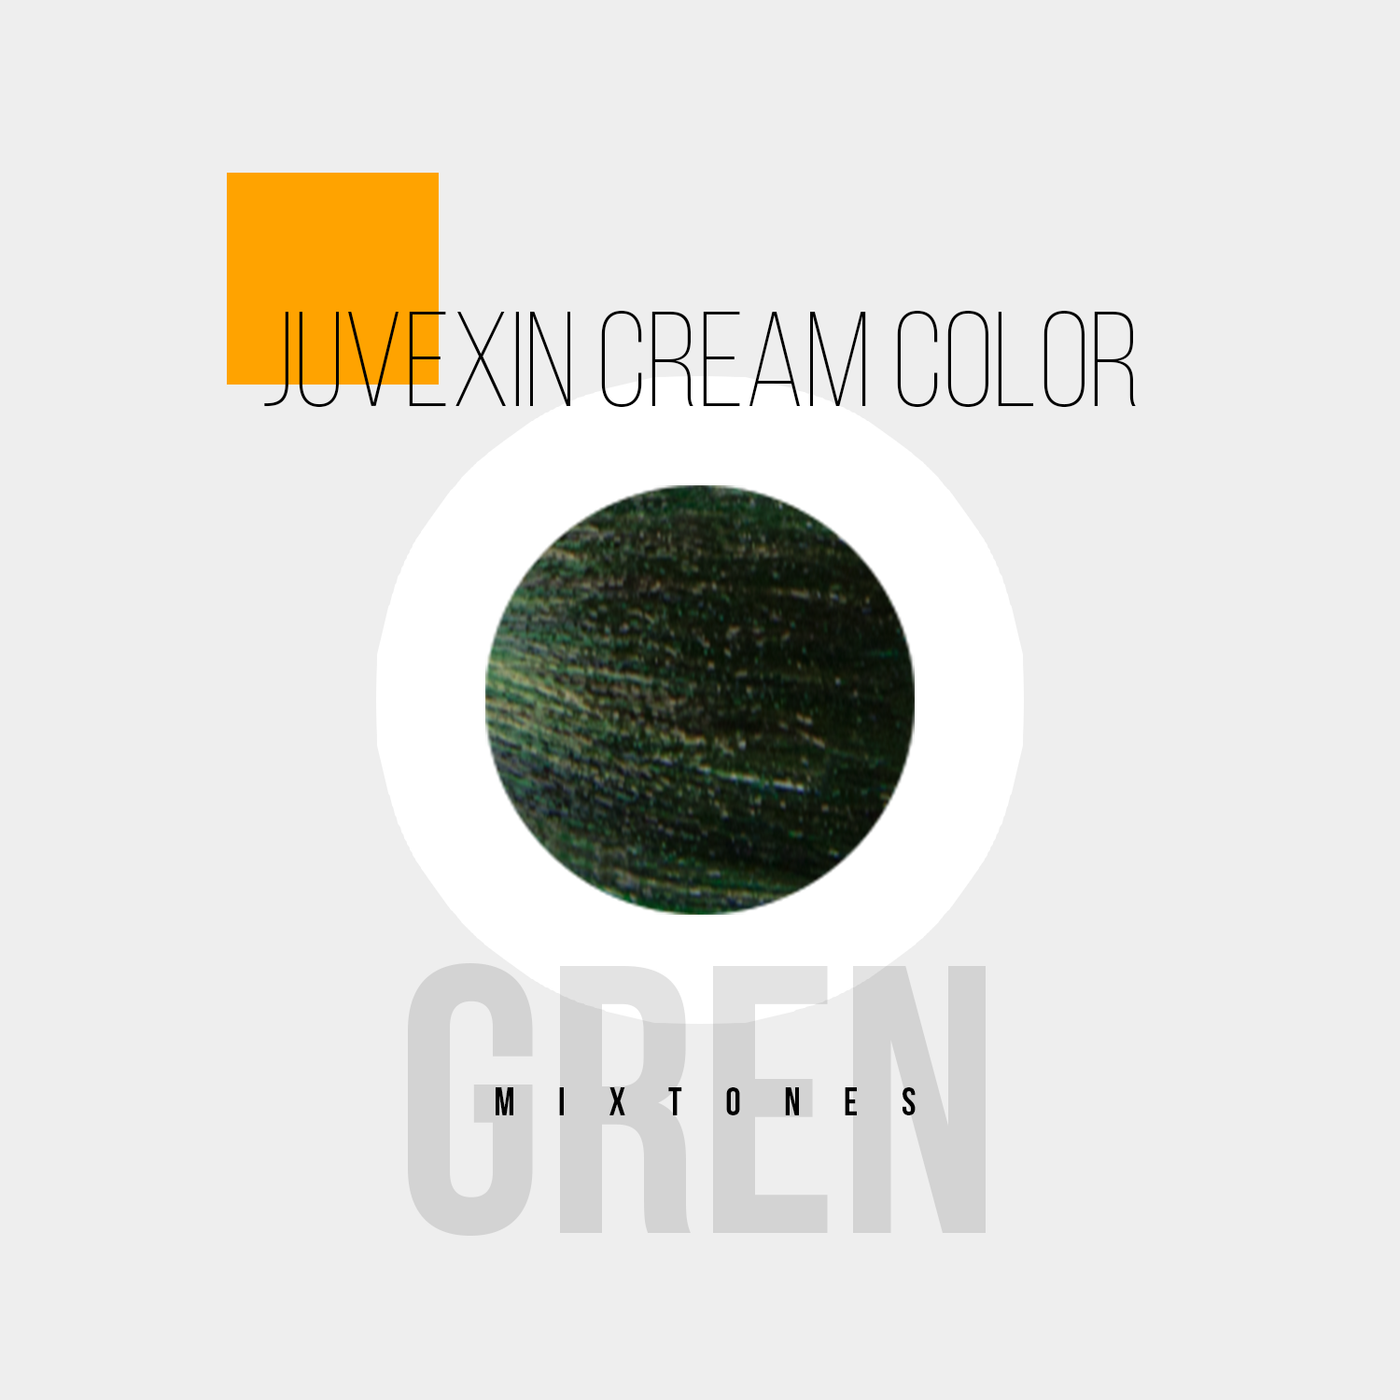 Juvexin Crema Color Pro